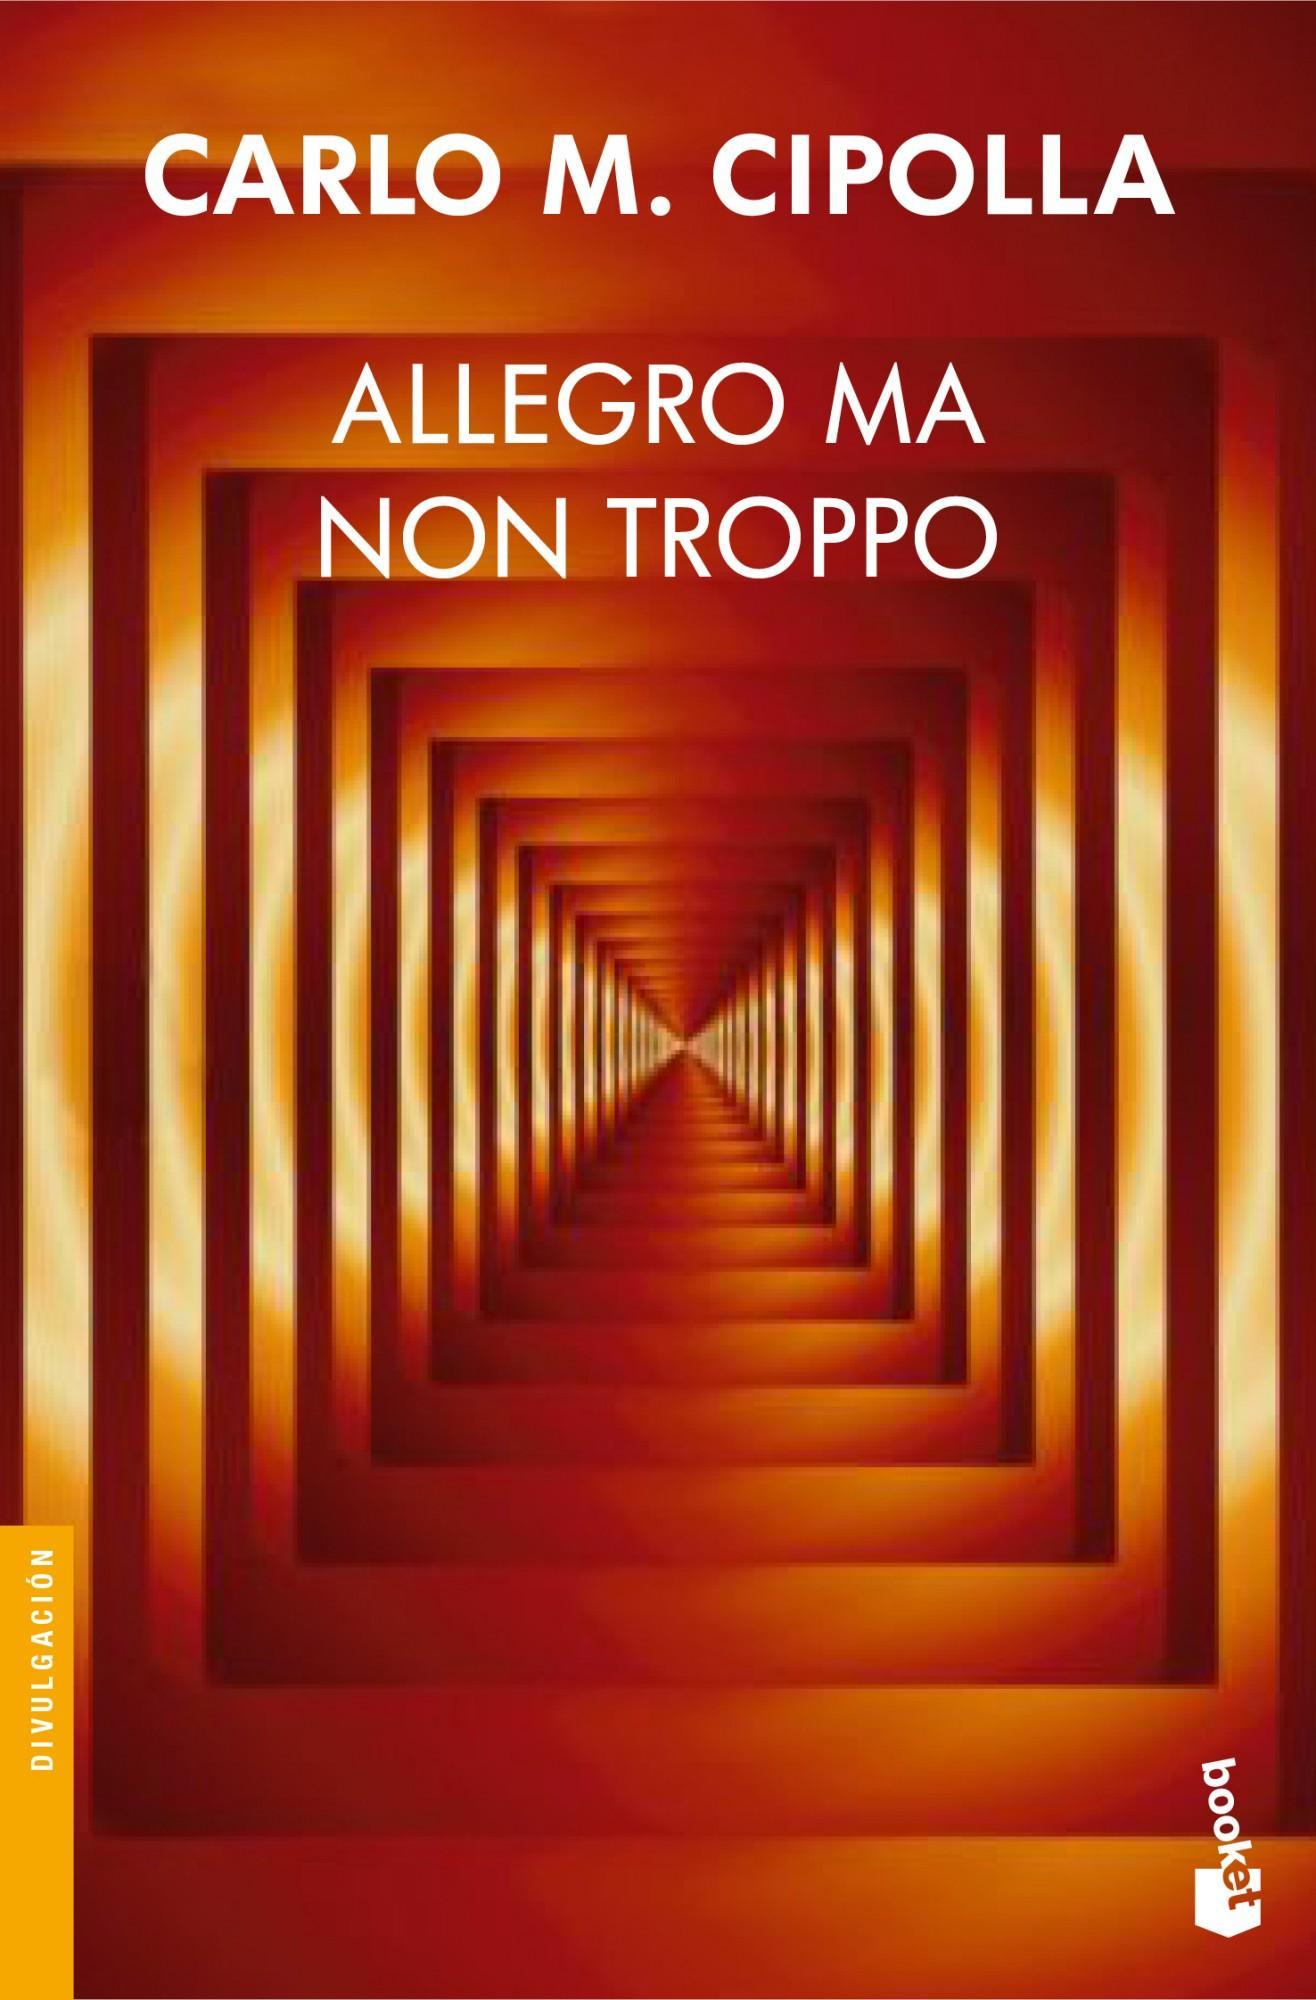 Foto Allegro ma non troppo (en papel) foto 737216